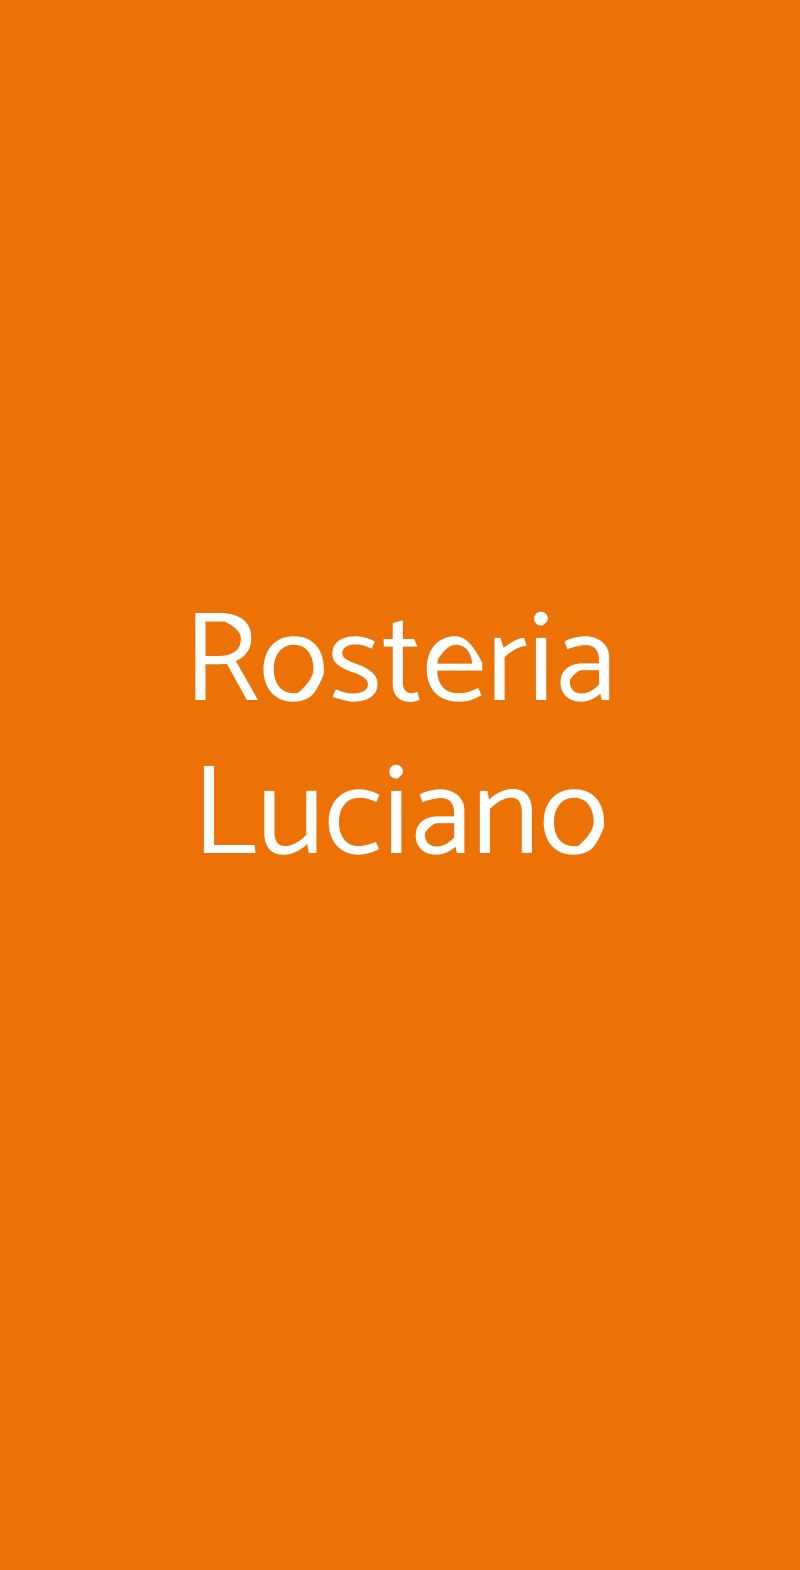 Rosteria Luciano Bologna menù 1 pagina